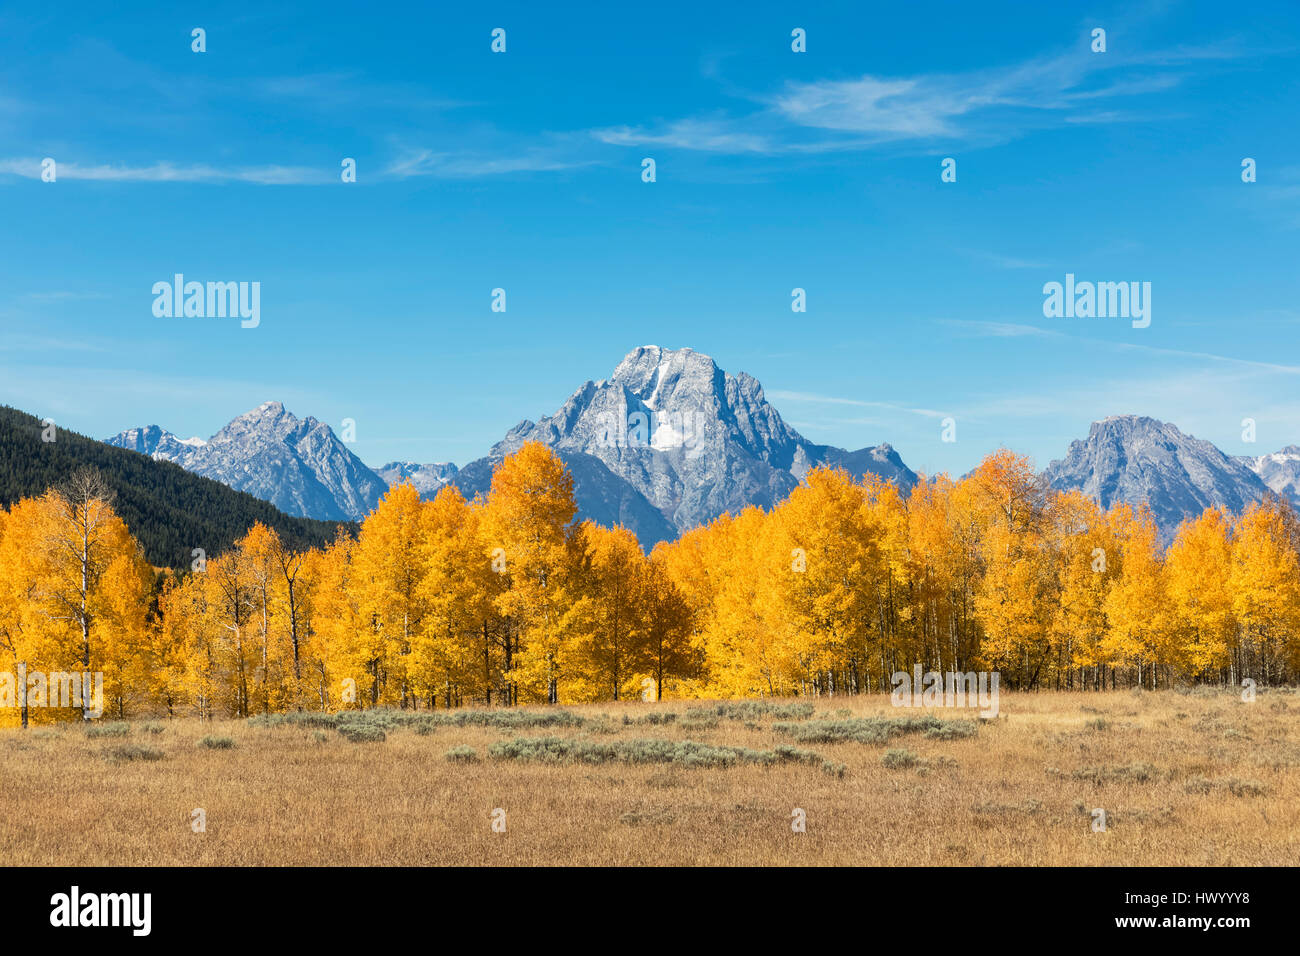 USA, Wyoming, Rocky Mountains, Teton Range, Grand Teton National Park, Mount Moran and aspens in autumn Stock Photo